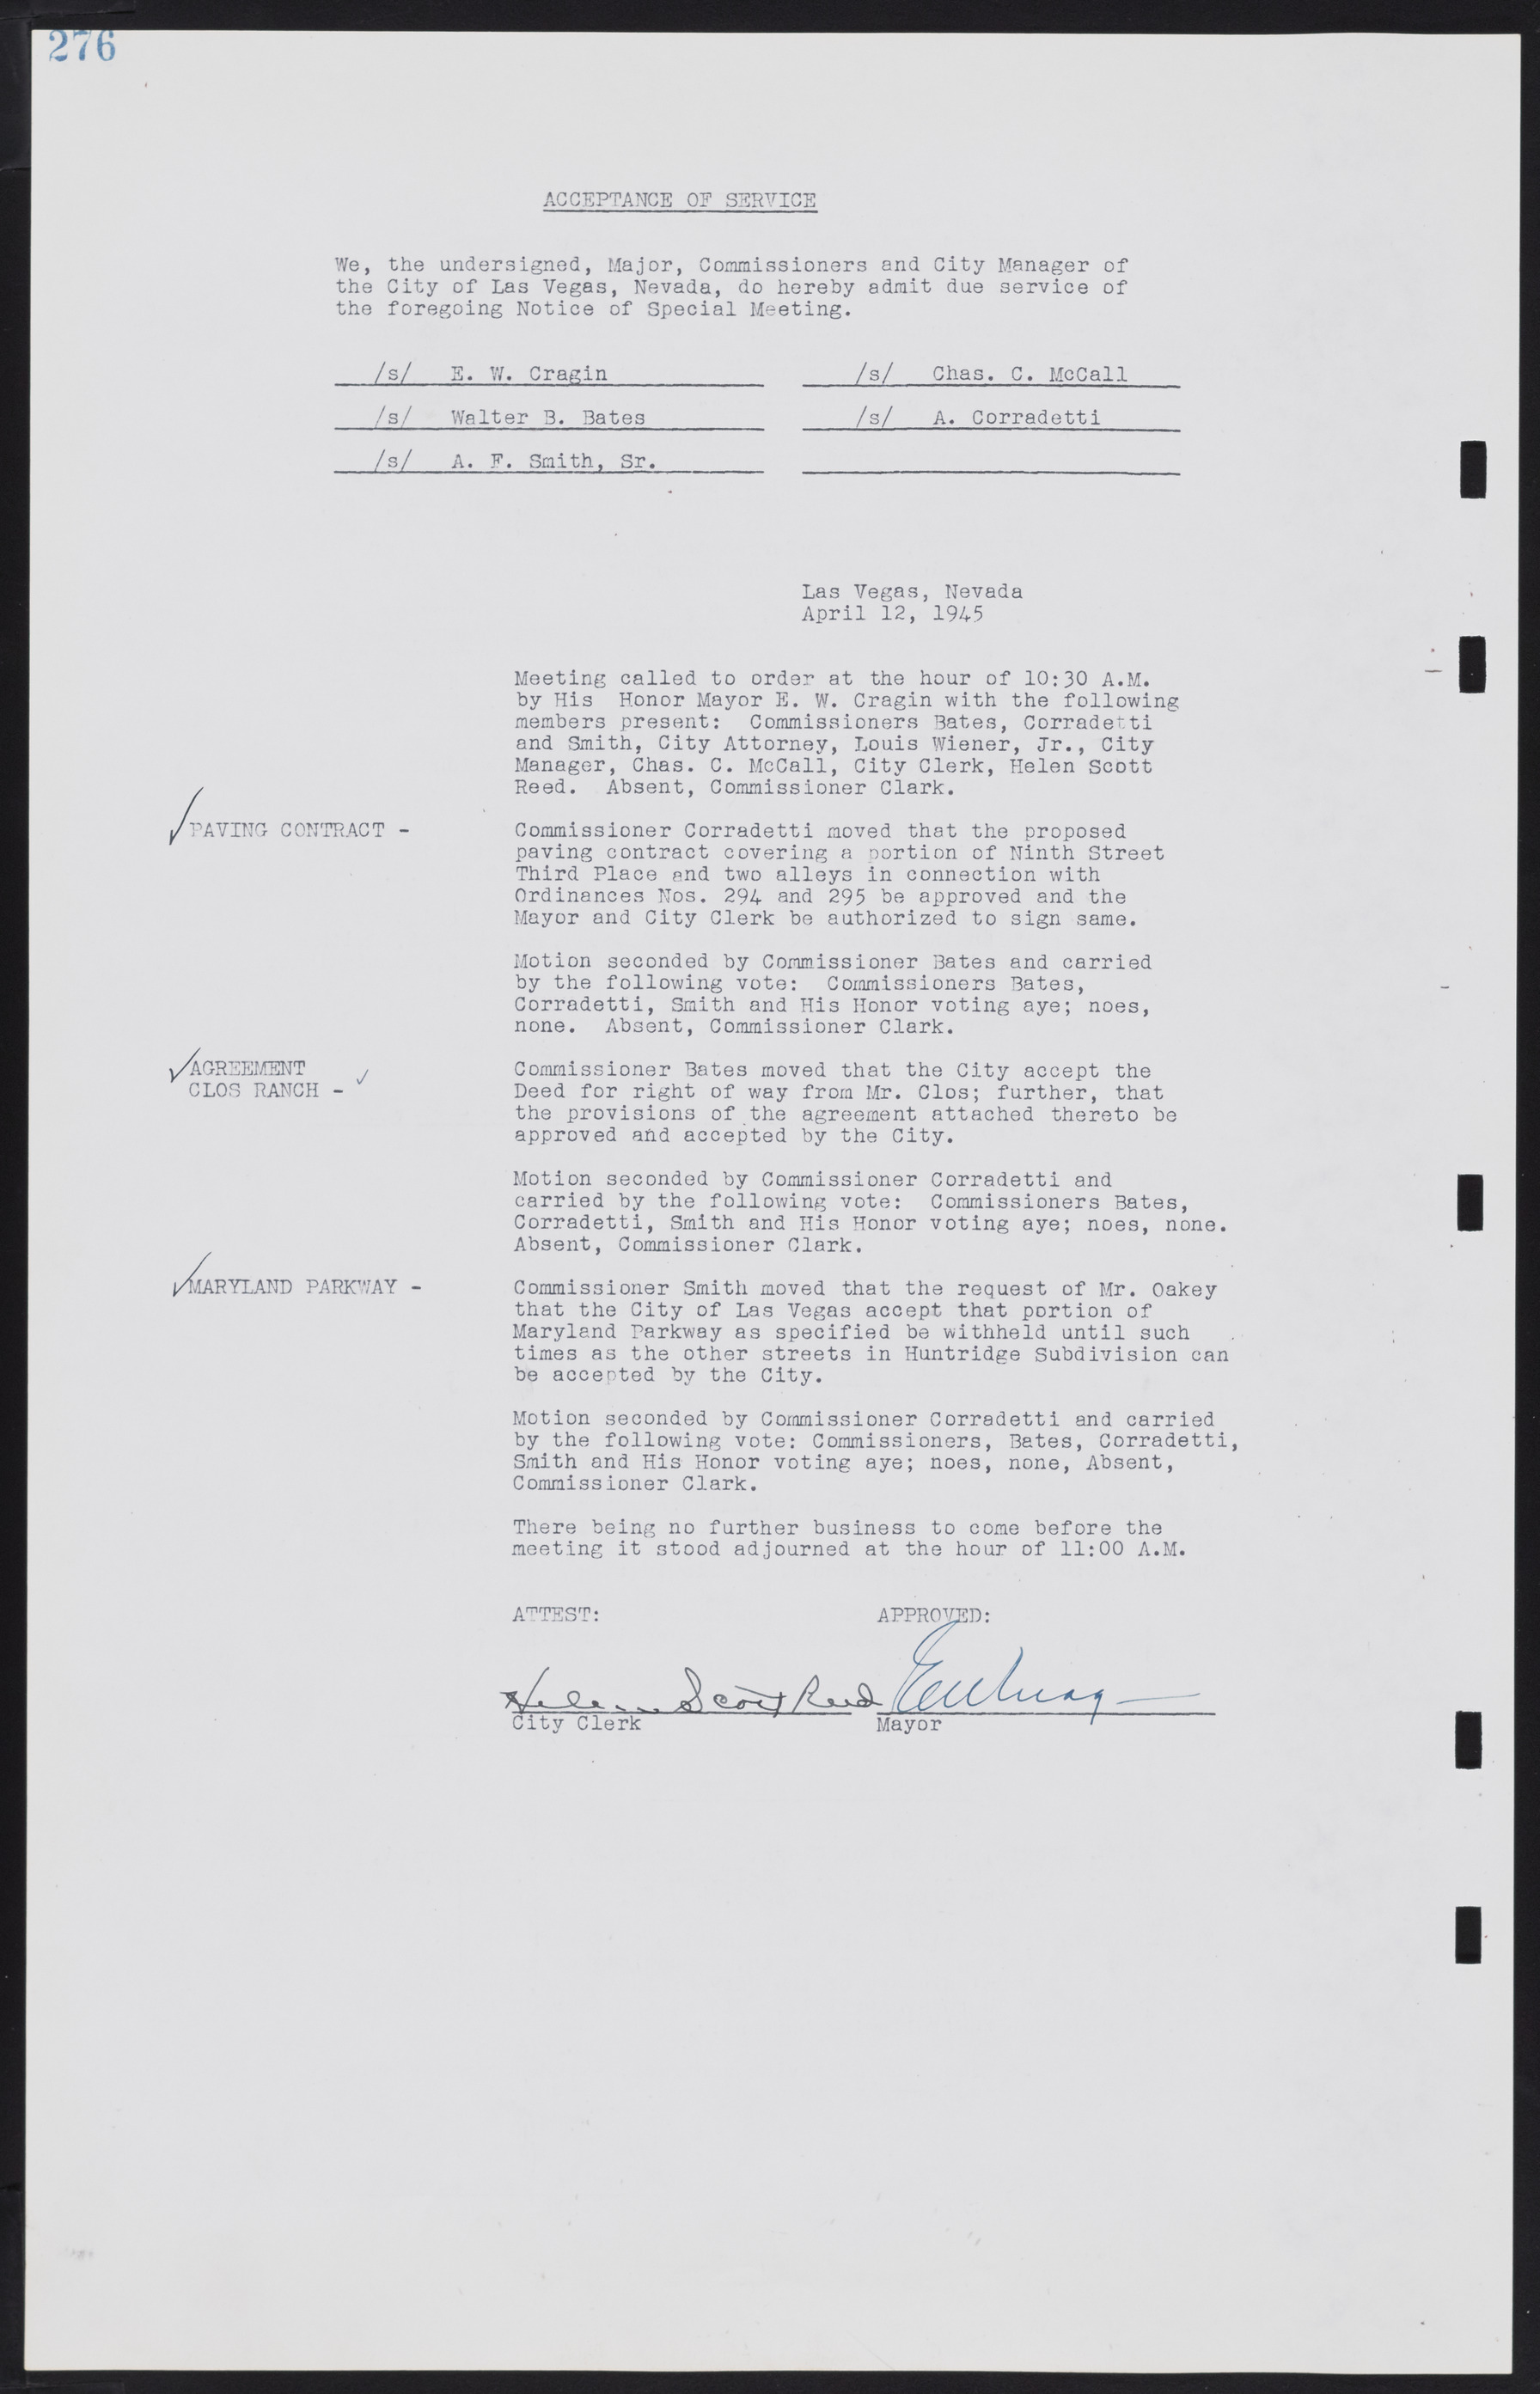 Las Vegas City Commission Minutes, August 11, 1942 to December 30, 1946, lvc000005-298